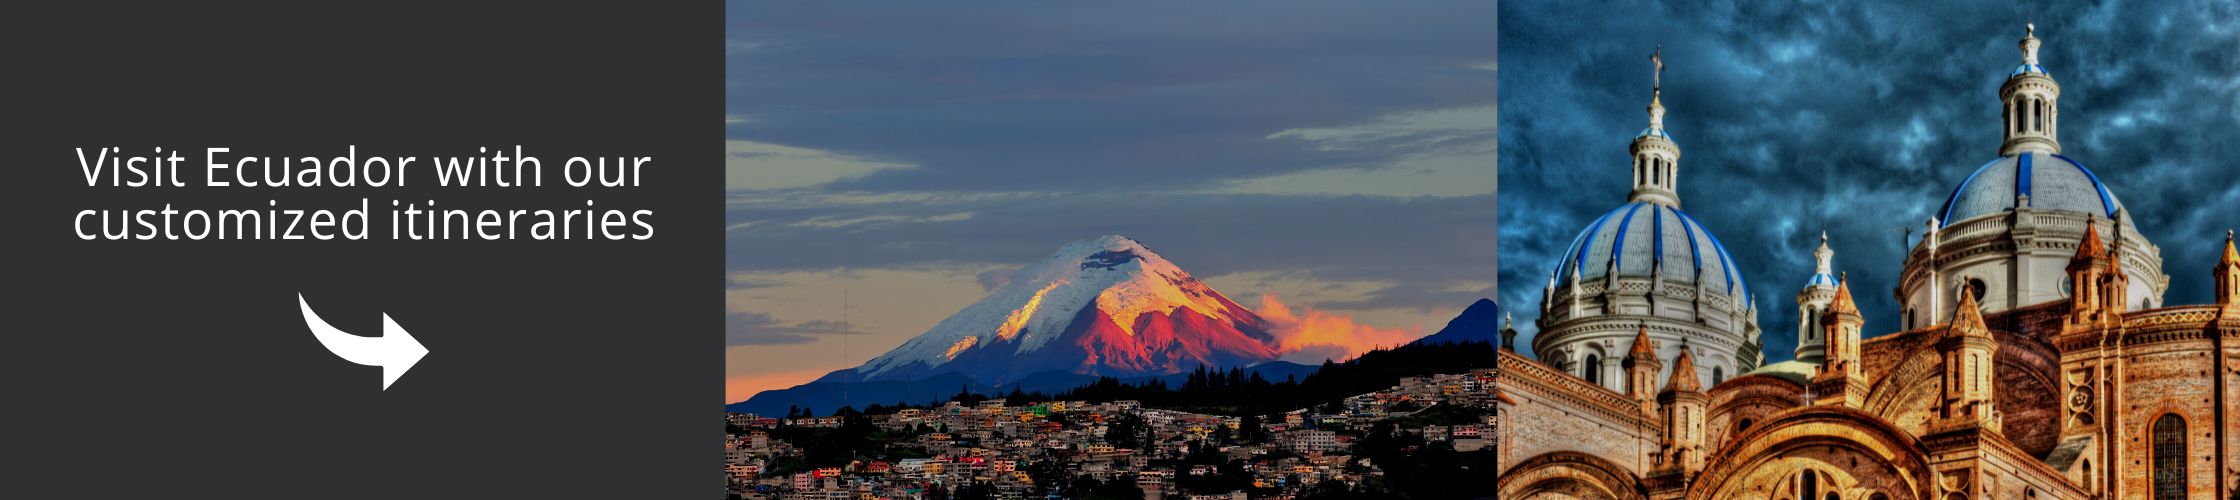 Visit Ecuador